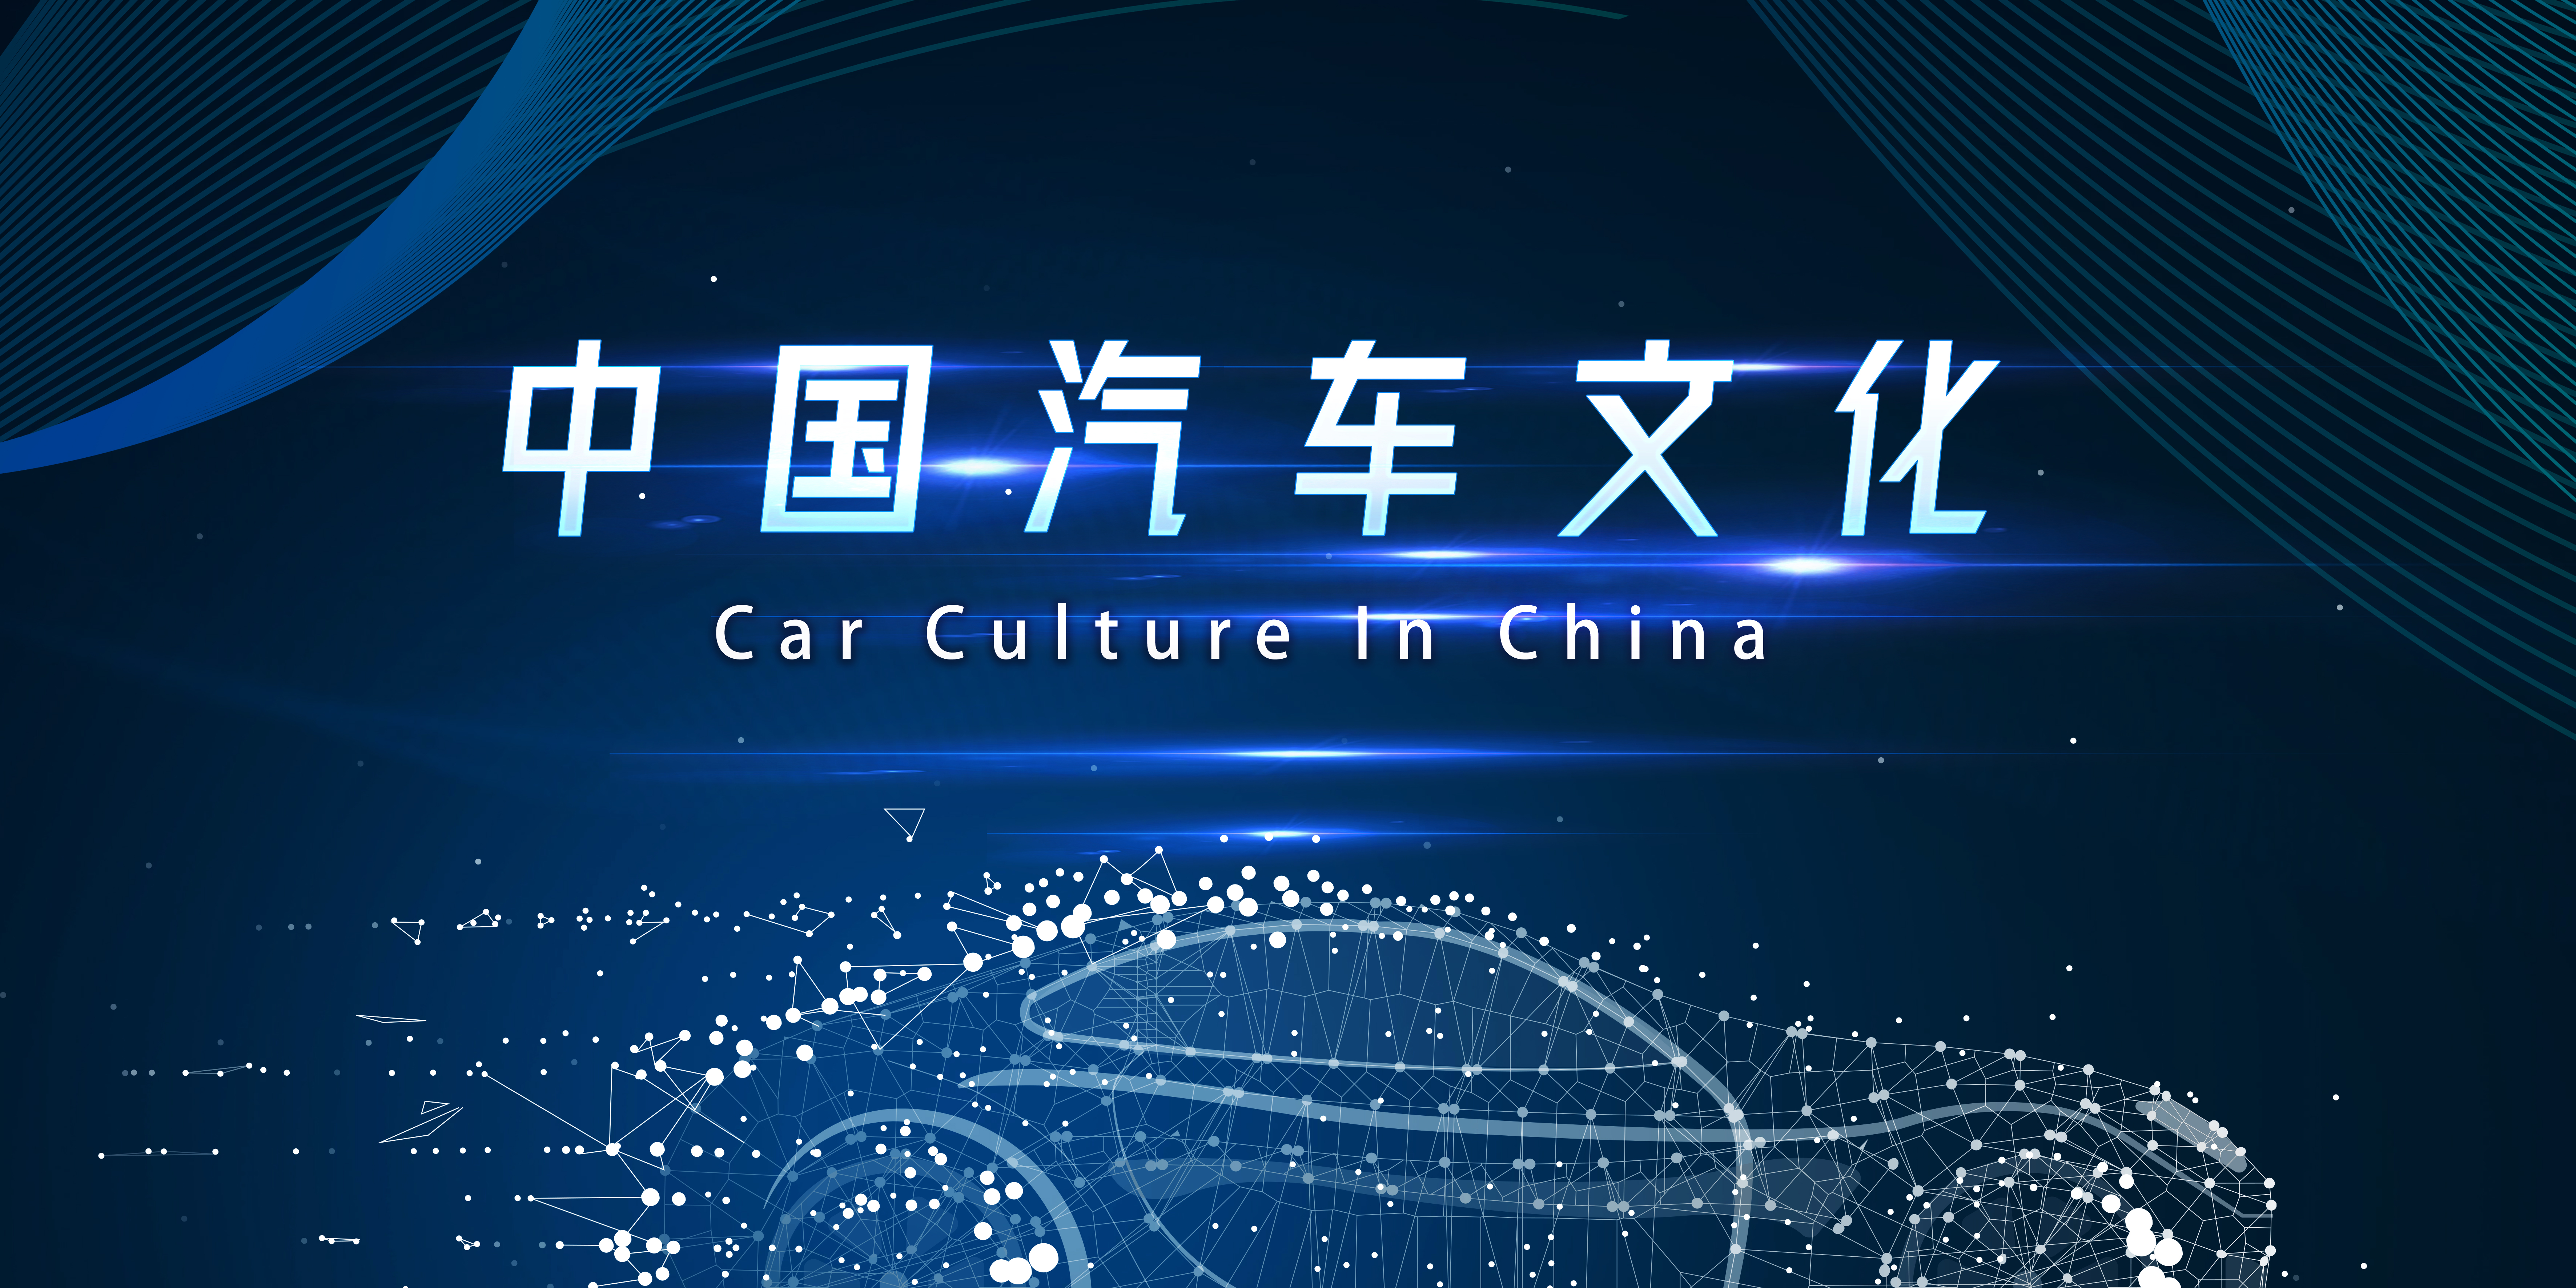 Car Culture in China